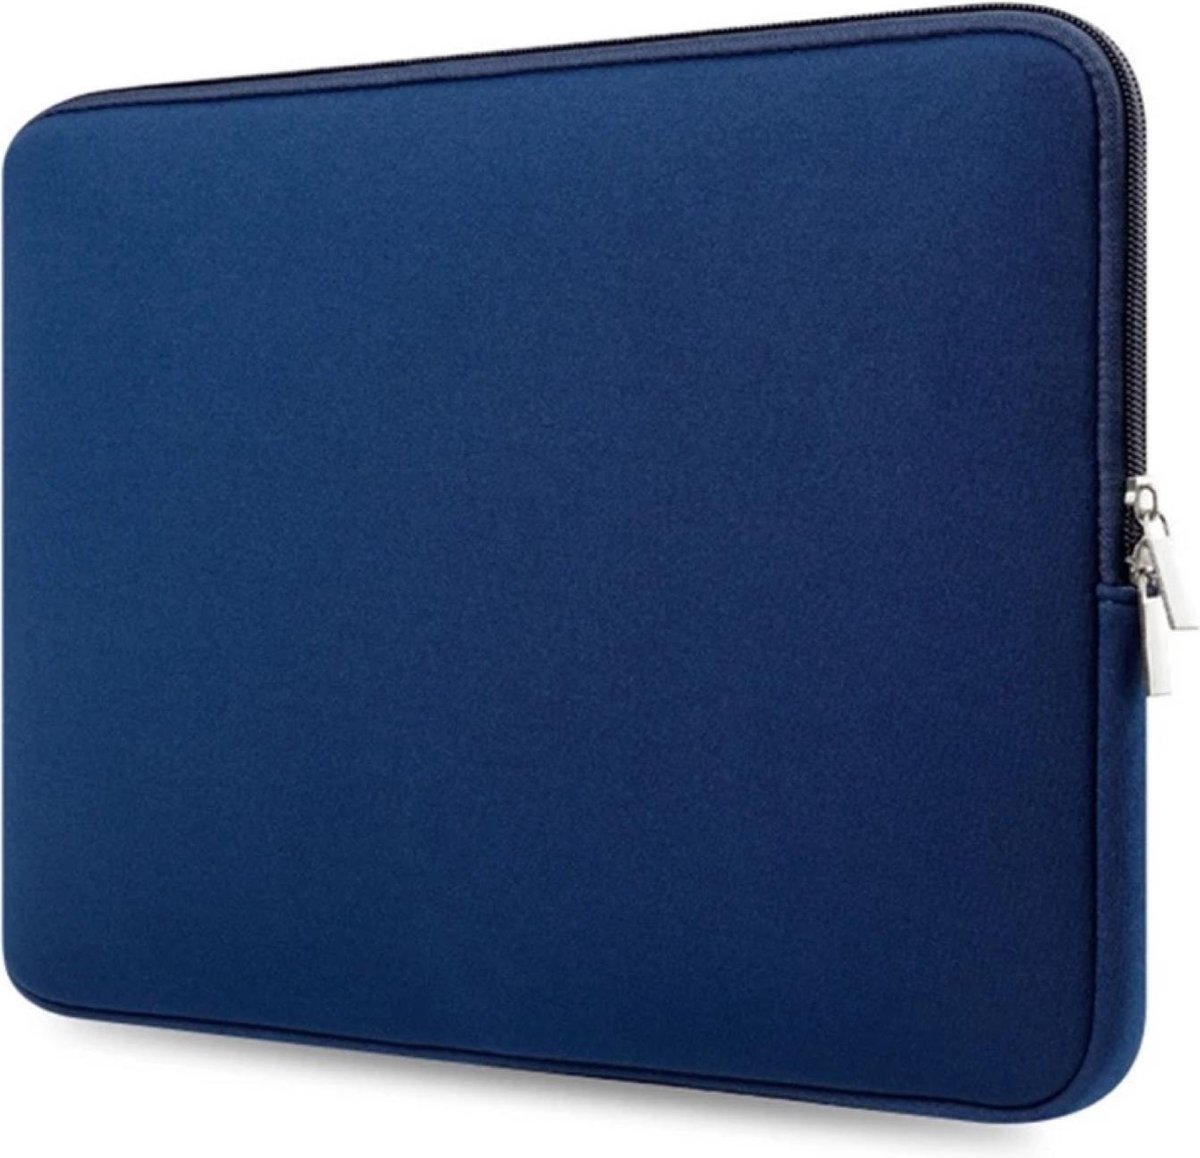 Laptop Sleeve voor Sony Vaio - hoes - extra bescherming - Met Ritssluiting - spatwaterbestendig - 14,6 inch ( Blauw )